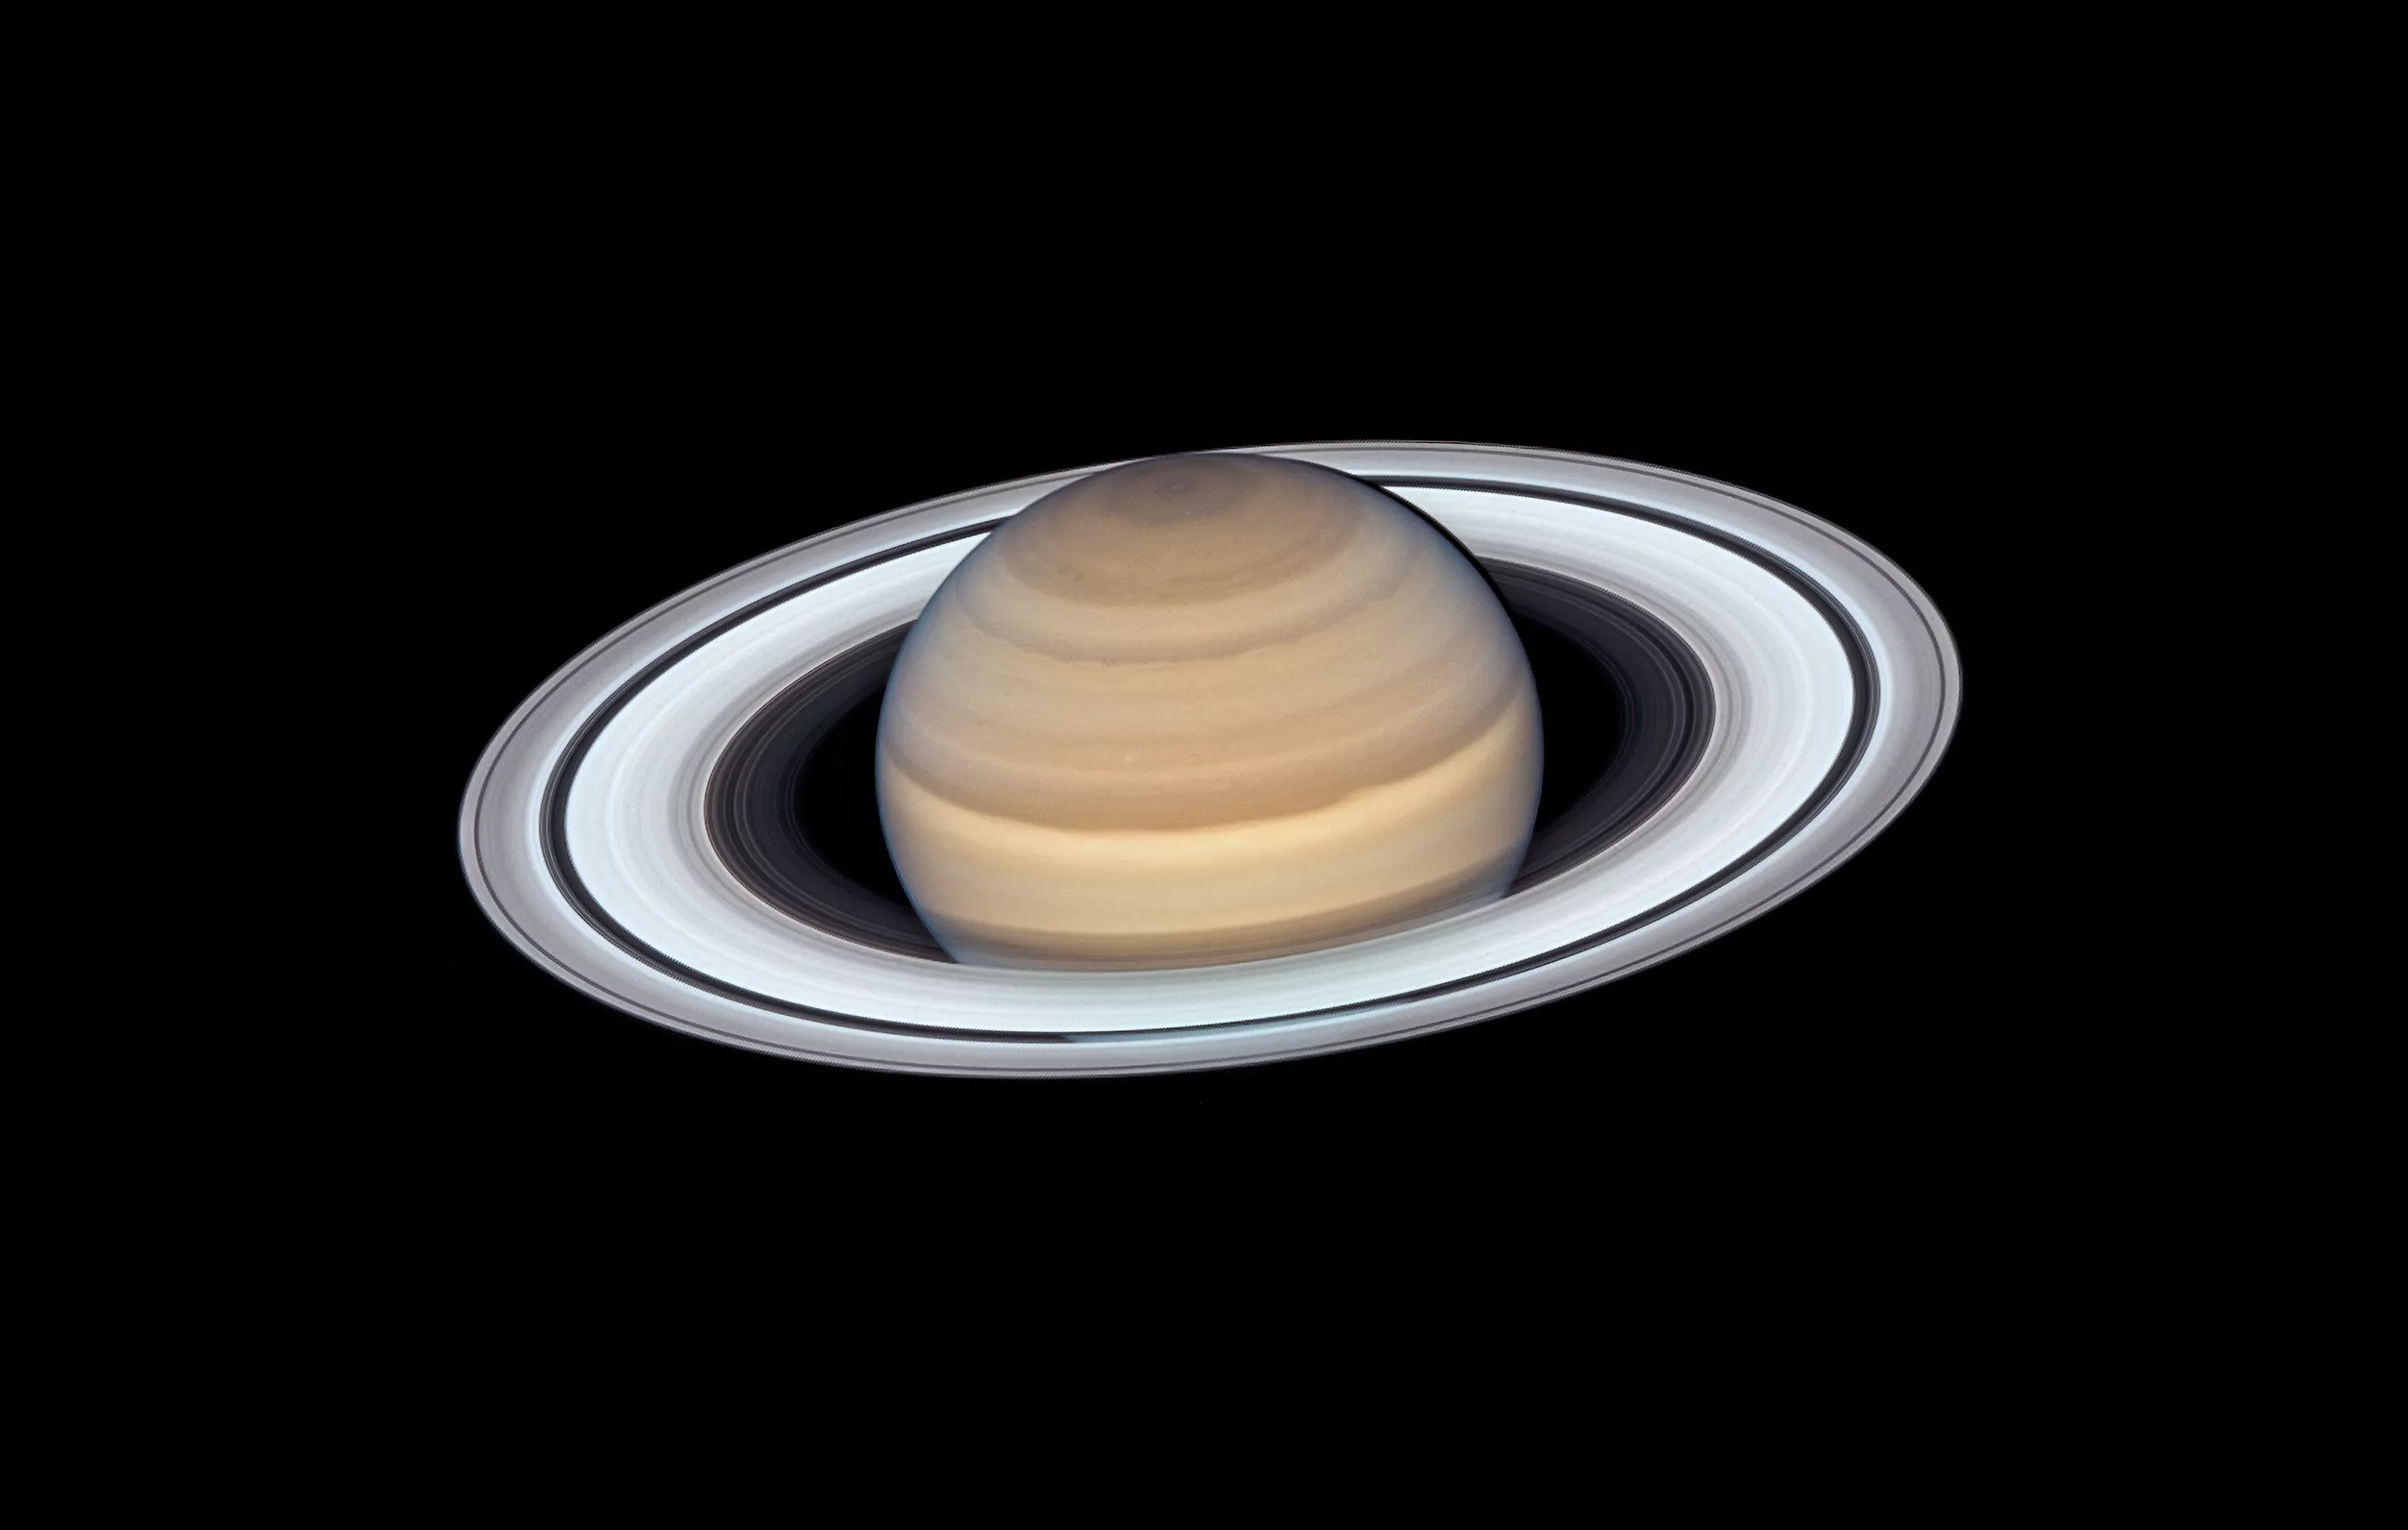 Последний портрет Сатурна, сделанный телескопом Хаббл